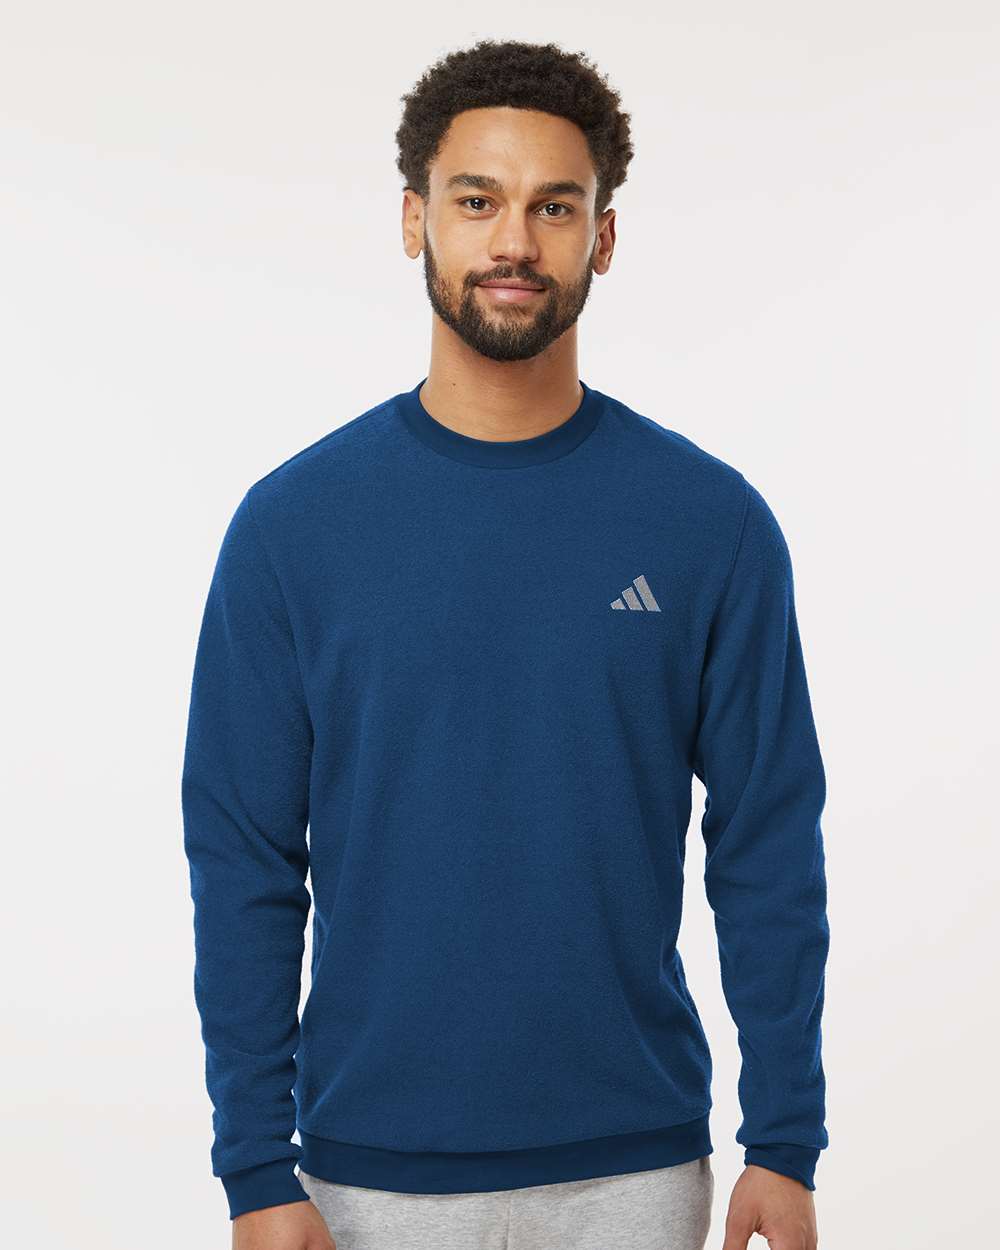 Adidas A586 Crewneck Sweatshirt #colormdl_Collegiate Navy